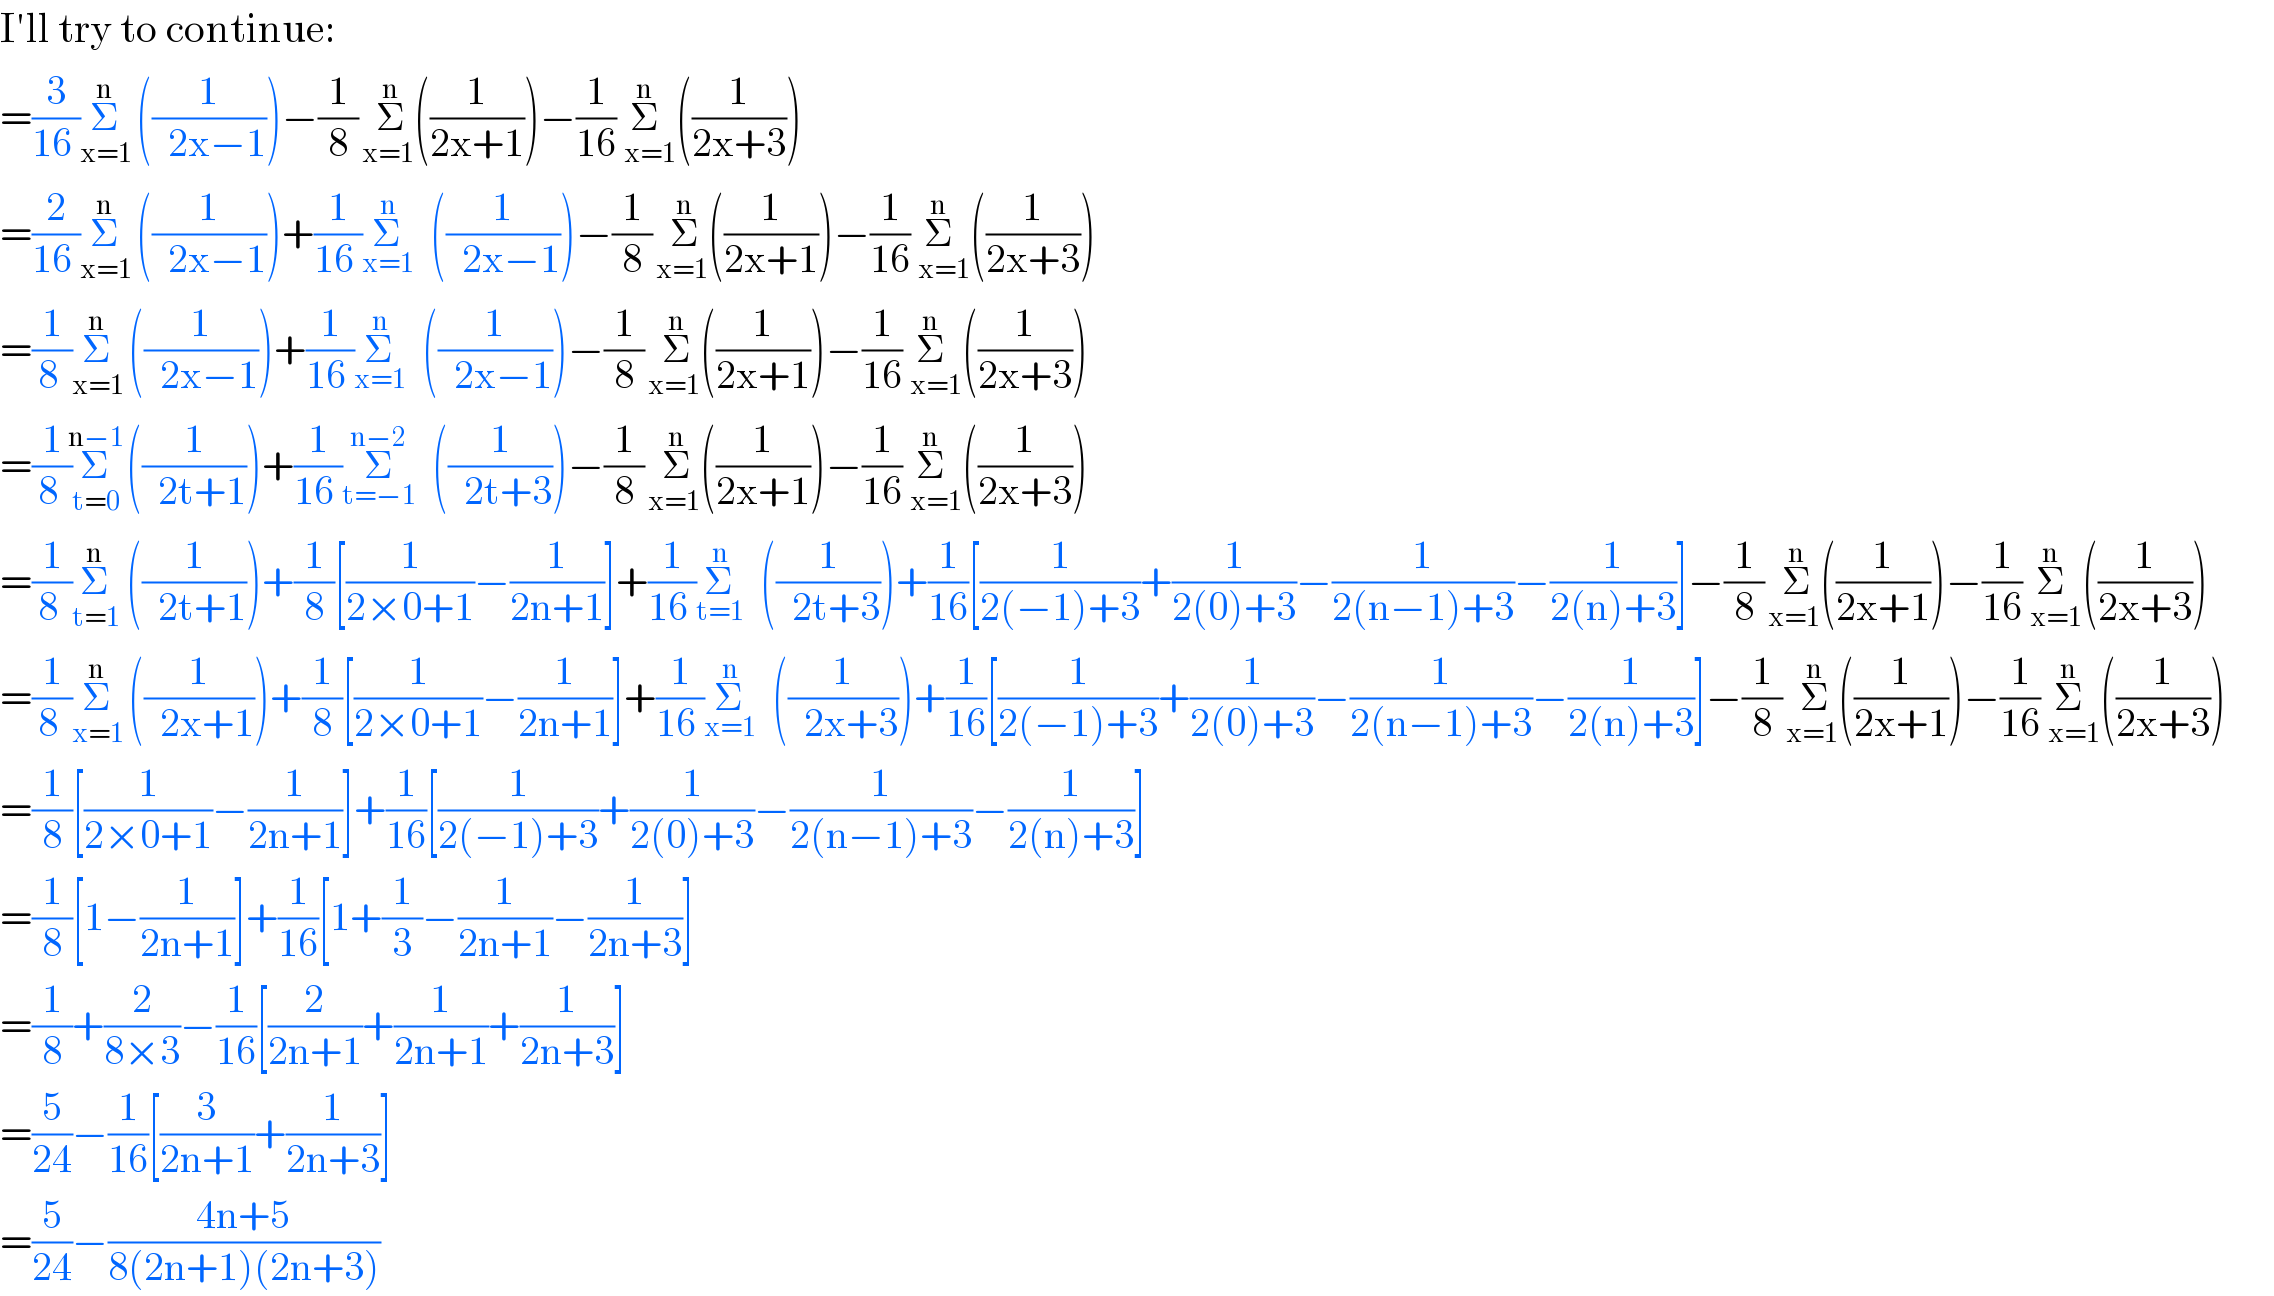 I′ll try to continue:  =(3/(16 ))Σ_(x=1) ^(n)   ((1/(  2x−1)))−(1/8)Σ_( x=1   ) ^(n)  ((1/(2x+1)))−(1/(16))Σ_(  x=1) ^(n)   ((1/(2x+3)))  =(2/(16 ))Σ_(x=1) ^(n)   ((1/(  2x−1)))+(1/(16 ))Σ_(x=1) ^n   ((1/(  2x−1)))−(1/8)Σ_( x=1   ) ^(n)  ((1/(2x+1)))−(1/(16))Σ_(  x=1) ^(n)   ((1/(2x+3)))  =(1/(8 ))Σ_(x=1) ^(n)   ((1/(  2x−1)))+(1/(16 ))Σ_(x=1) ^n   ((1/(  2x−1)))−(1/8)Σ_( x=1   ) ^(n)  ((1/(2x+1)))−(1/(16))Σ_(  x=1) ^(n)   ((1/(2x+3)))  =(1/(8 ))Σ_(t=0) ^(n−1)   ((1/(  2t+1)))+(1/(16 ))Σ_(t=−1) ^(n−2)   ((1/(  2t+3)))−(1/8)Σ_( x=1   ) ^(n)  ((1/(2x+1)))−(1/(16))Σ_(  x=1) ^(n)   ((1/(2x+3)))  =(1/(8 ))Σ_(t=1) ^(n)   ((1/(  2t+1)))+(1/8)[(1/(2×0+1))−(1/(2n+1))]+(1/(16 ))Σ_(t=1) ^n   ((1/(  2t+3)))+(1/(16))[(1/(2(−1)+3))+(1/(2(0)+3))−(1/(2(n−1)+3))−(1/(2(n)+3))]−(1/8)Σ_( x=1   ) ^(n)  ((1/(2x+1)))−(1/(16))Σ_(  x=1) ^(n)   ((1/(2x+3)))  =(1/(8 ))Σ_(x=1) ^(n)   ((1/(  2x+1)))+(1/8)[(1/(2×0+1))−(1/(2n+1))]+(1/(16 ))Σ_(x=1) ^n   ((1/(  2x+3)))+(1/(16))[(1/(2(−1)+3))+(1/(2(0)+3))−(1/(2(n−1)+3))−(1/(2(n)+3))]−(1/8)Σ_( x=1   ) ^(n)  ((1/(2x+1)))−(1/(16))Σ_(  x=1) ^(n)   ((1/(2x+3)))  =(1/8)[(1/(2×0+1))−(1/(2n+1))]+(1/(16))[(1/(2(−1)+3))+(1/(2(0)+3))−(1/(2(n−1)+3))−(1/(2(n)+3))]  =(1/8)[1−(1/(2n+1))]+(1/(16))[1+(1/3)−(1/(2n+1))−(1/(2n+3))]  =(1/8)+(2/(8×3))−(1/(16))[(2/(2n+1))+(1/(2n+1))+(1/(2n+3))]  =(5/(24))−(1/(16))[(3/(2n+1))+(1/(2n+3))]  =(5/(24))−((4n+5)/(8(2n+1)(2n+3)))  